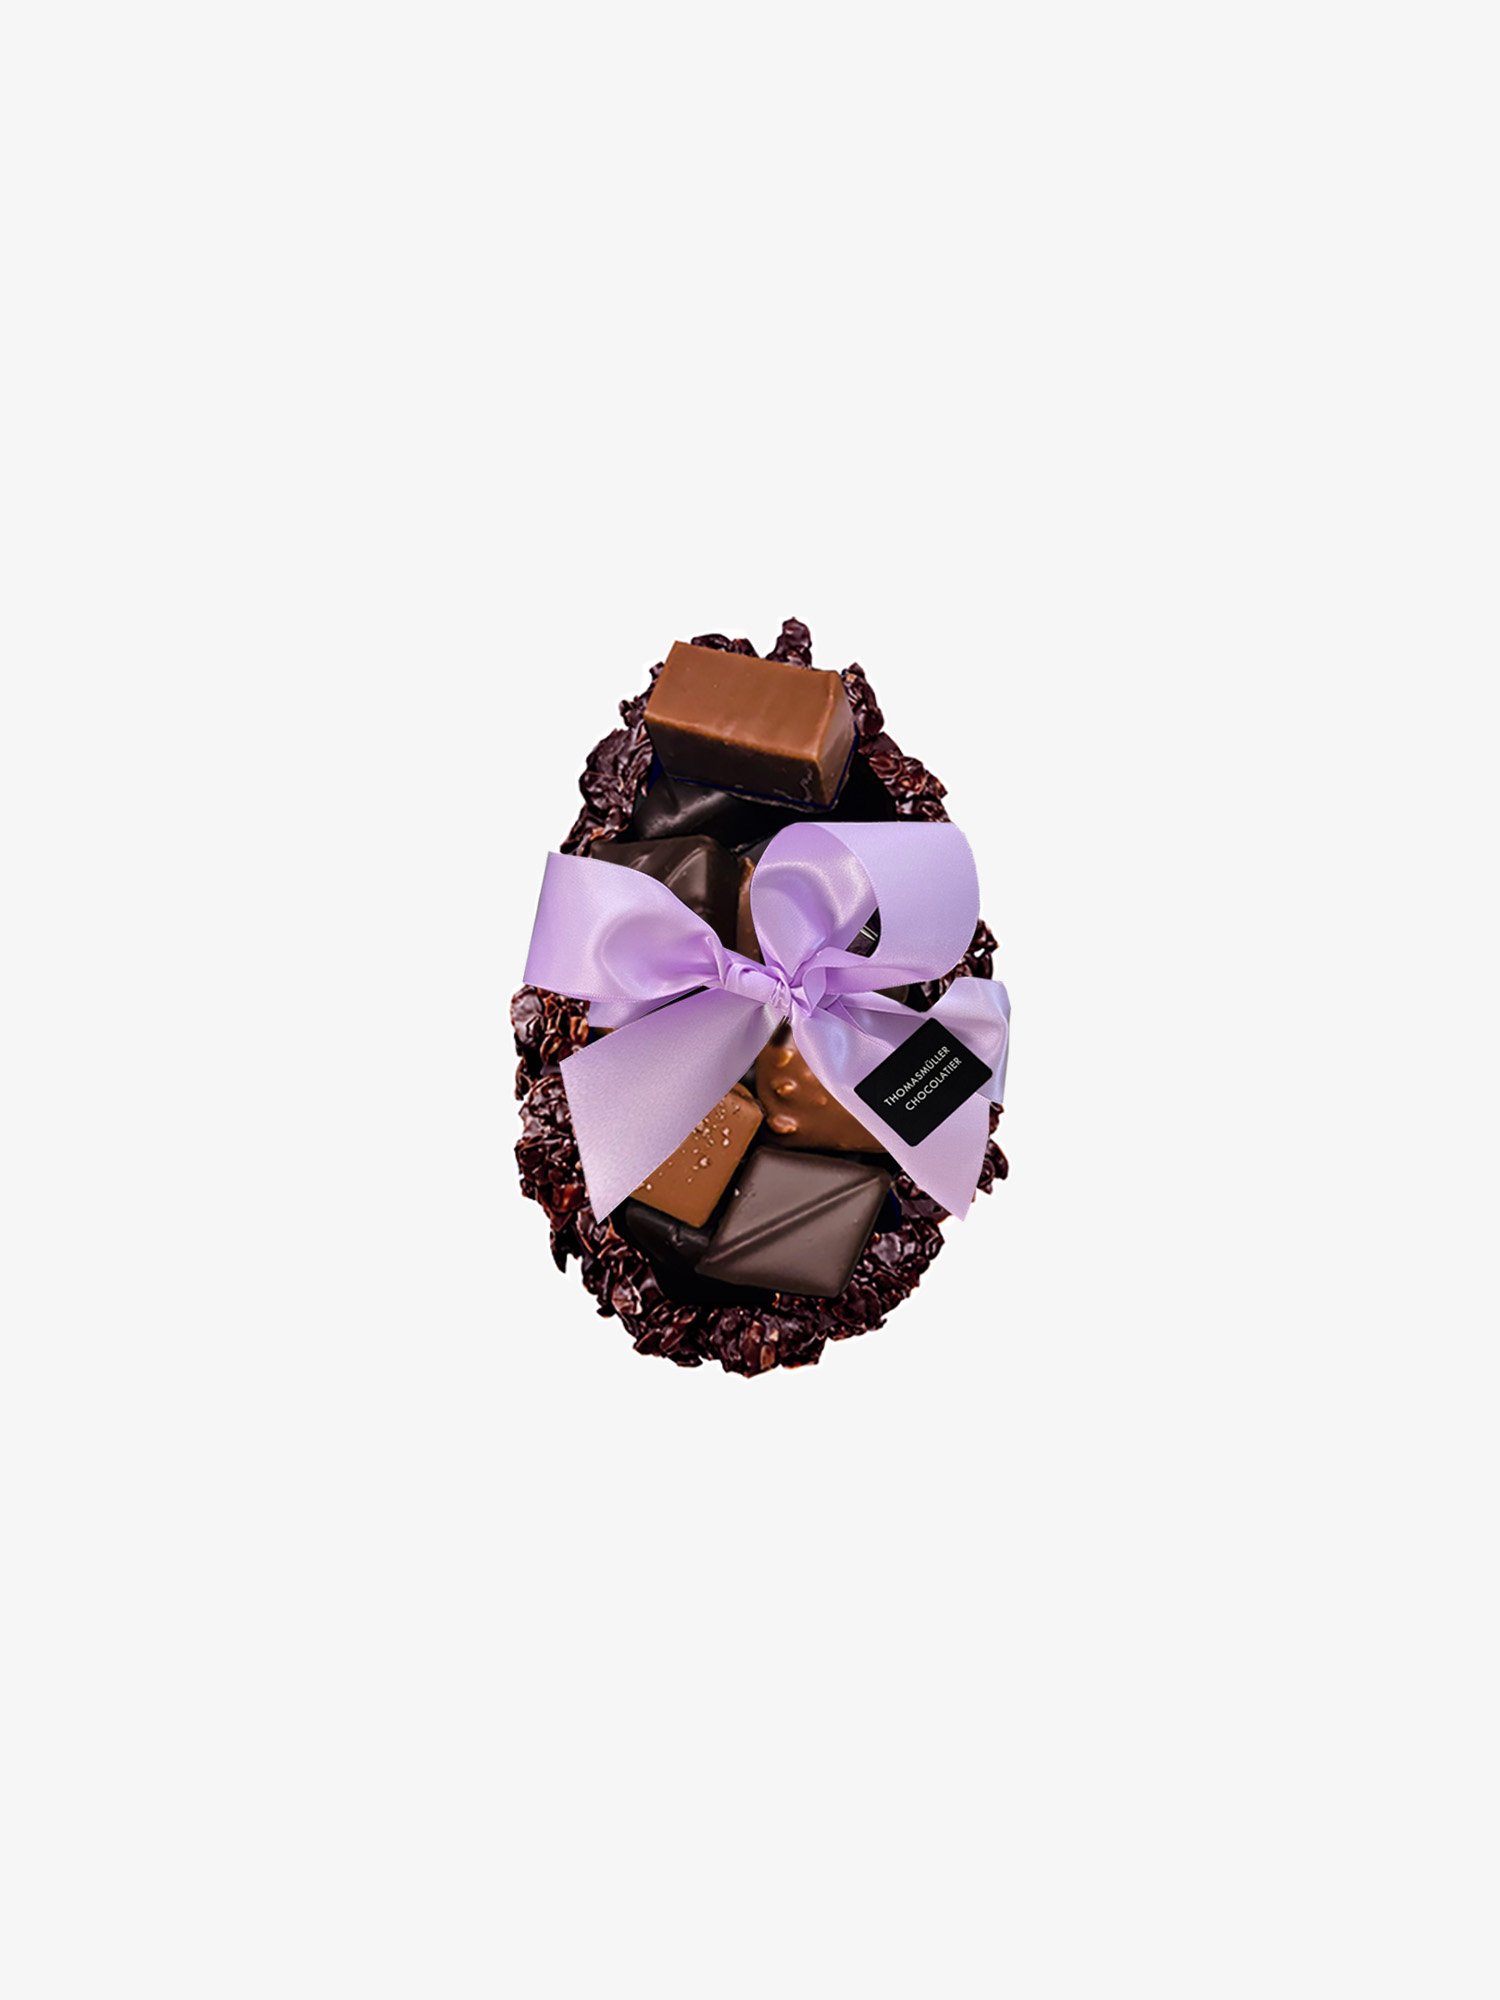 Rocher Easter Eggs buy online - Chocolatier Thomas Müller